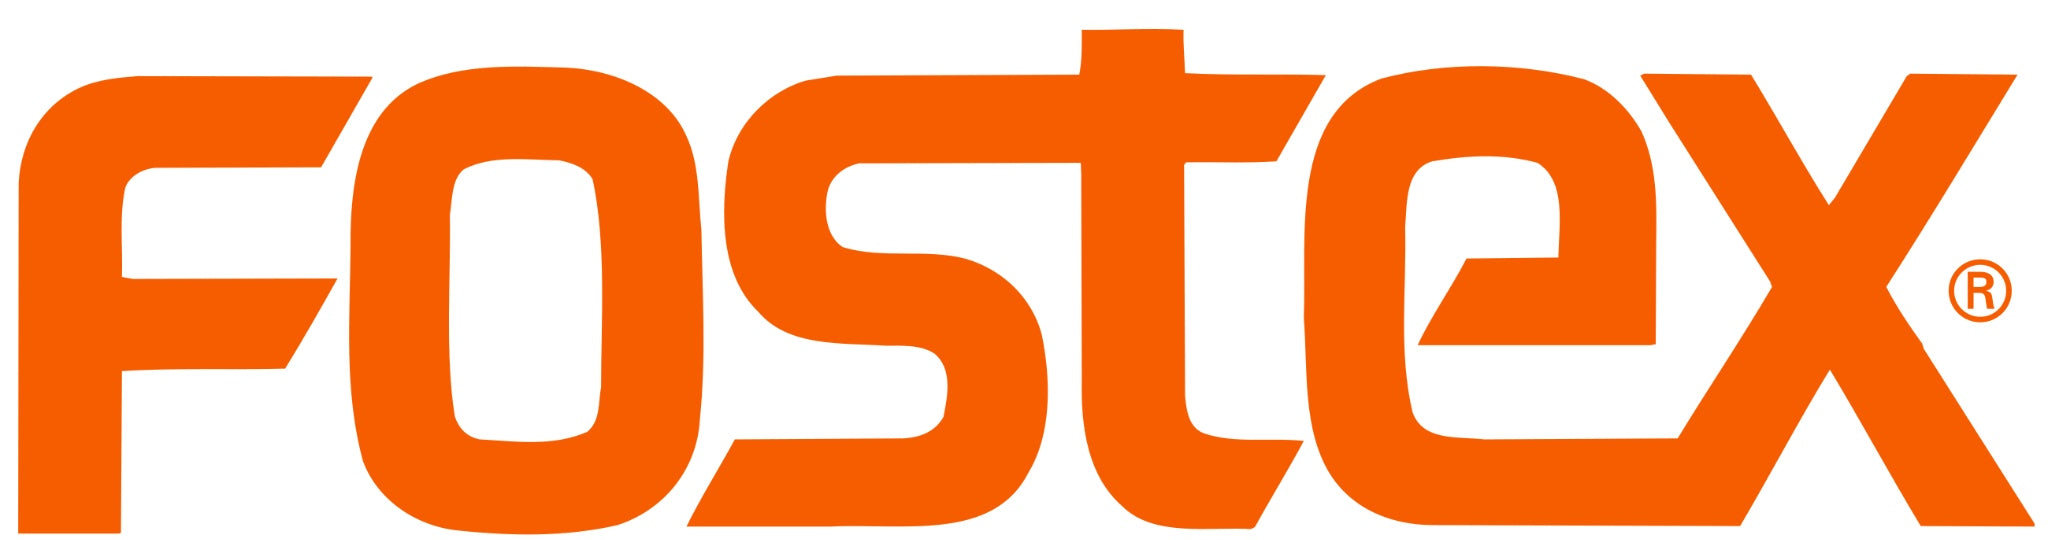 Fostex logo orange